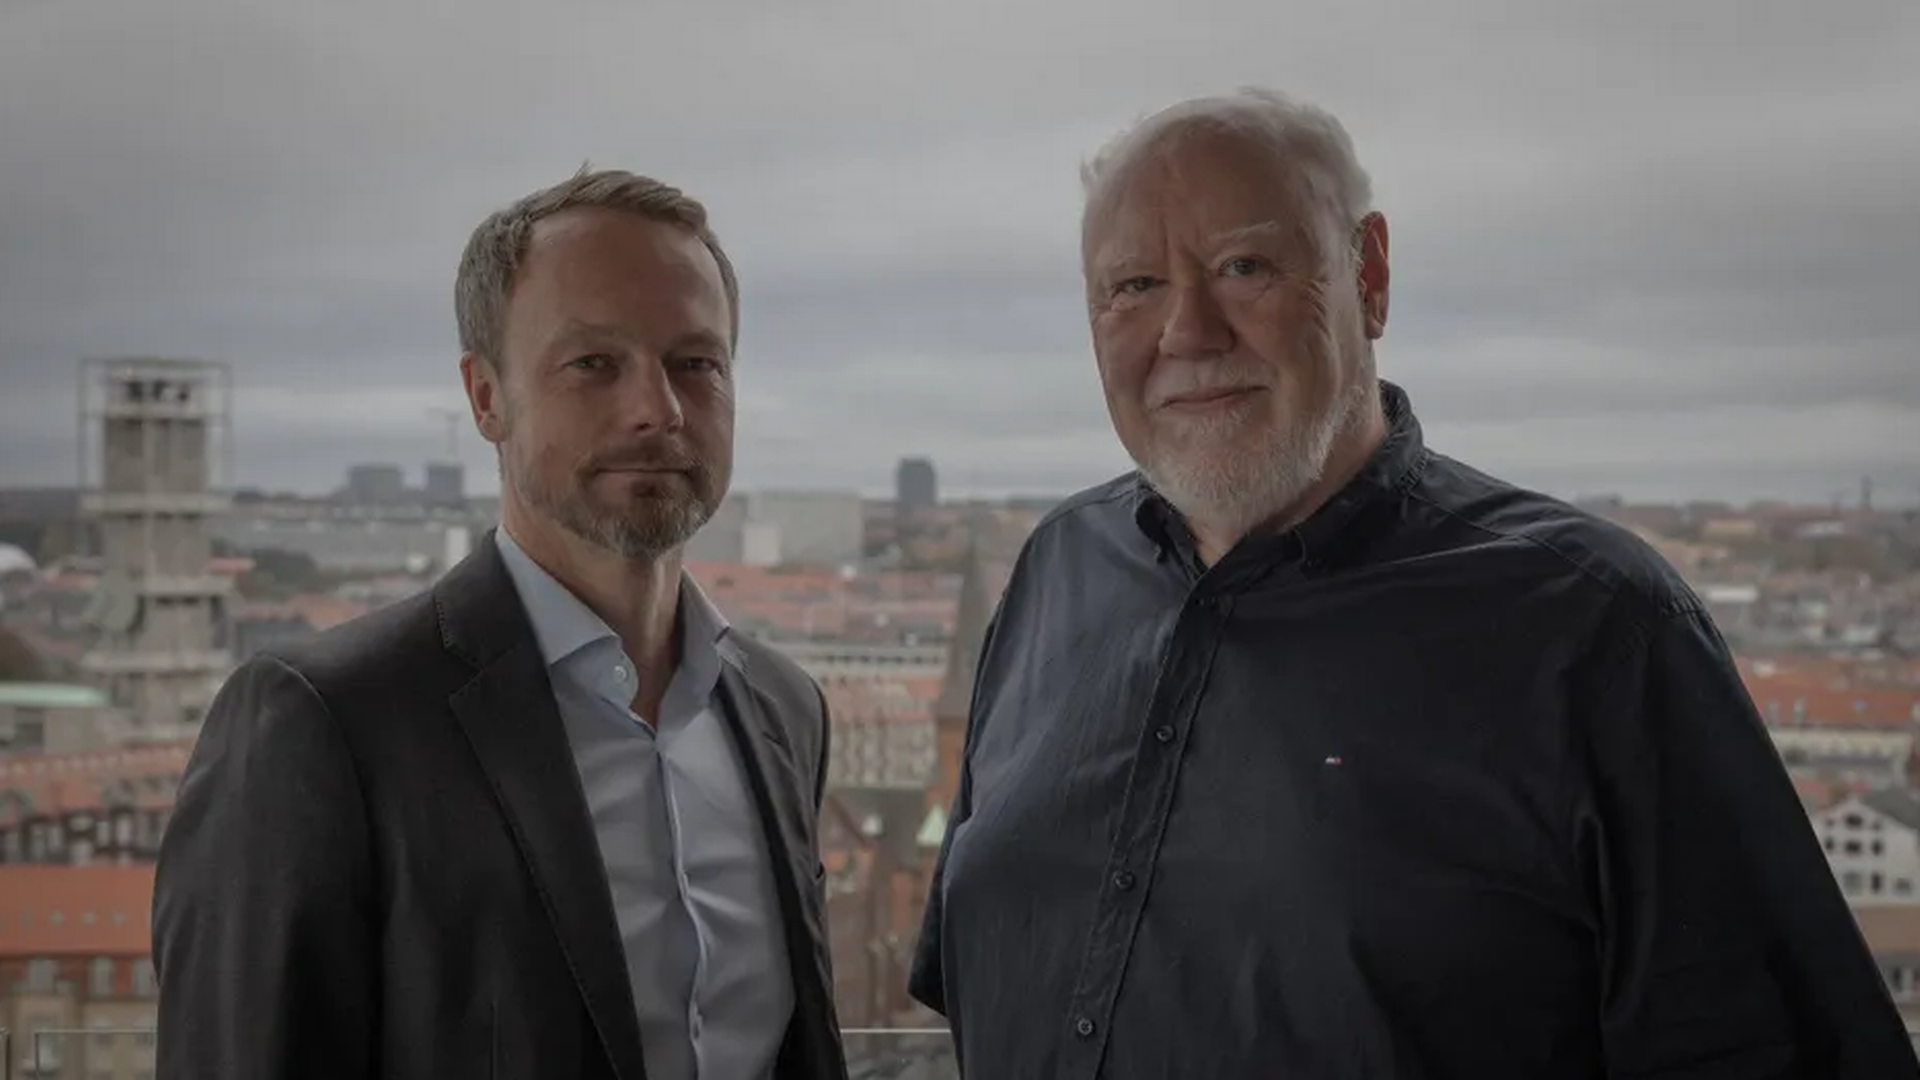 Adm. direktør Peter Kjærgaard og grundlægger Claus Hommelhoff fra kapitalforvalteren Formuepleje. | Foto: Martin Thomas Ford / Finans